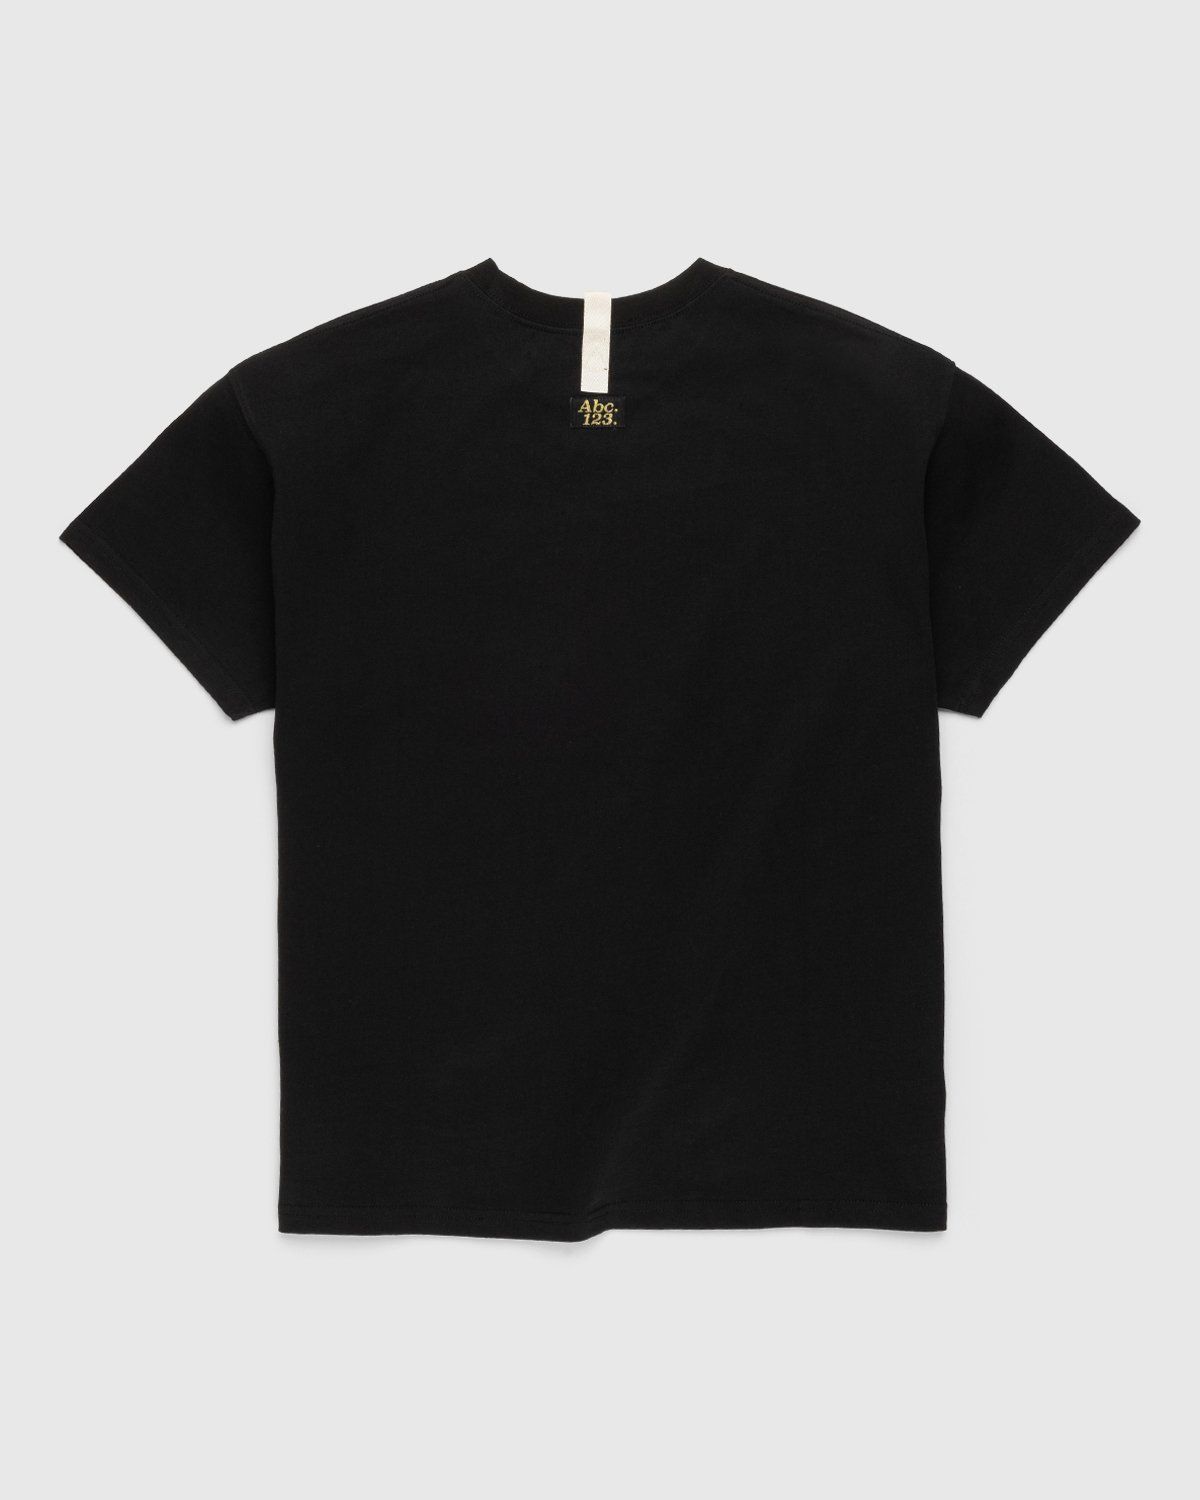 Abc. – Short-Sleeve Pocket Tee Anthracite - T-Shirts - Black - Image 2